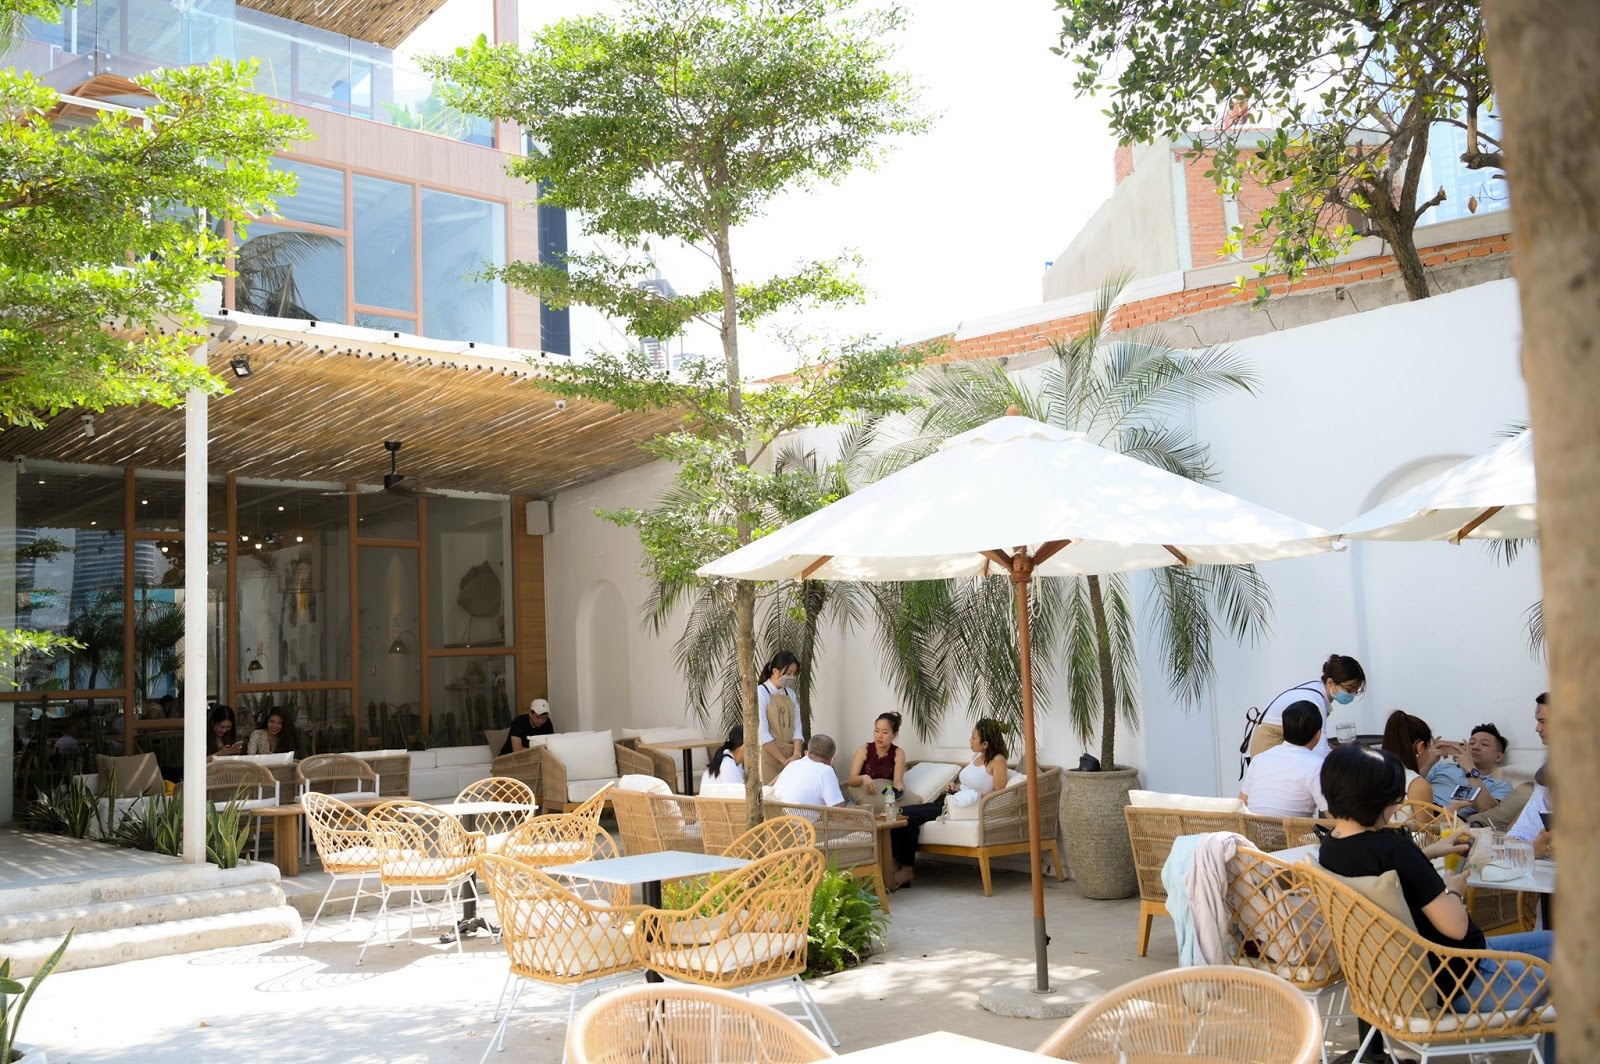 4 quán cà phê phong cách nhiệt đới đẹp như trời Âu hút khách ở Sài Gòn - 1